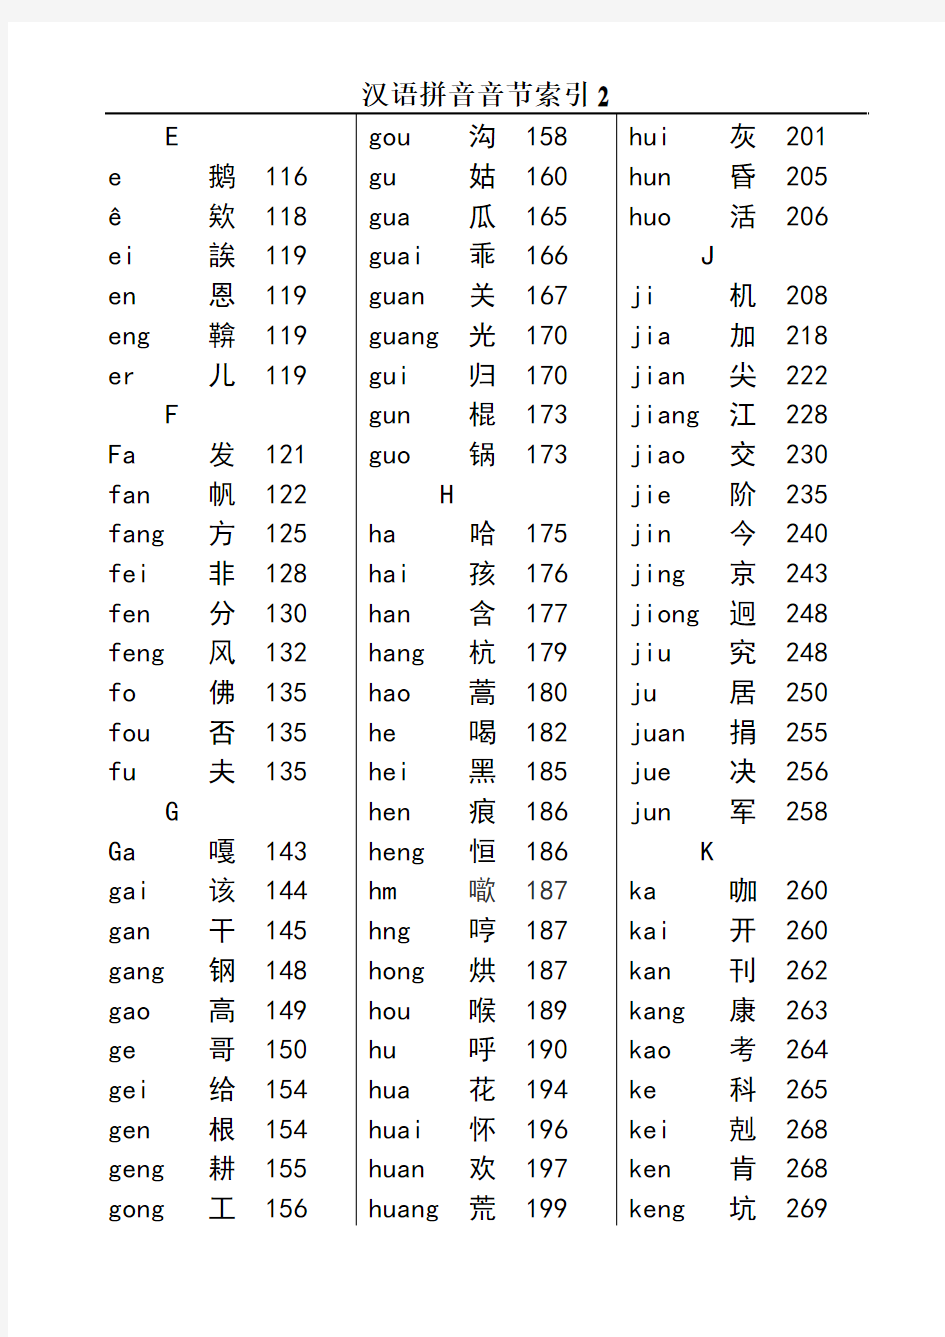 汉语拼音音节索引表--1998版